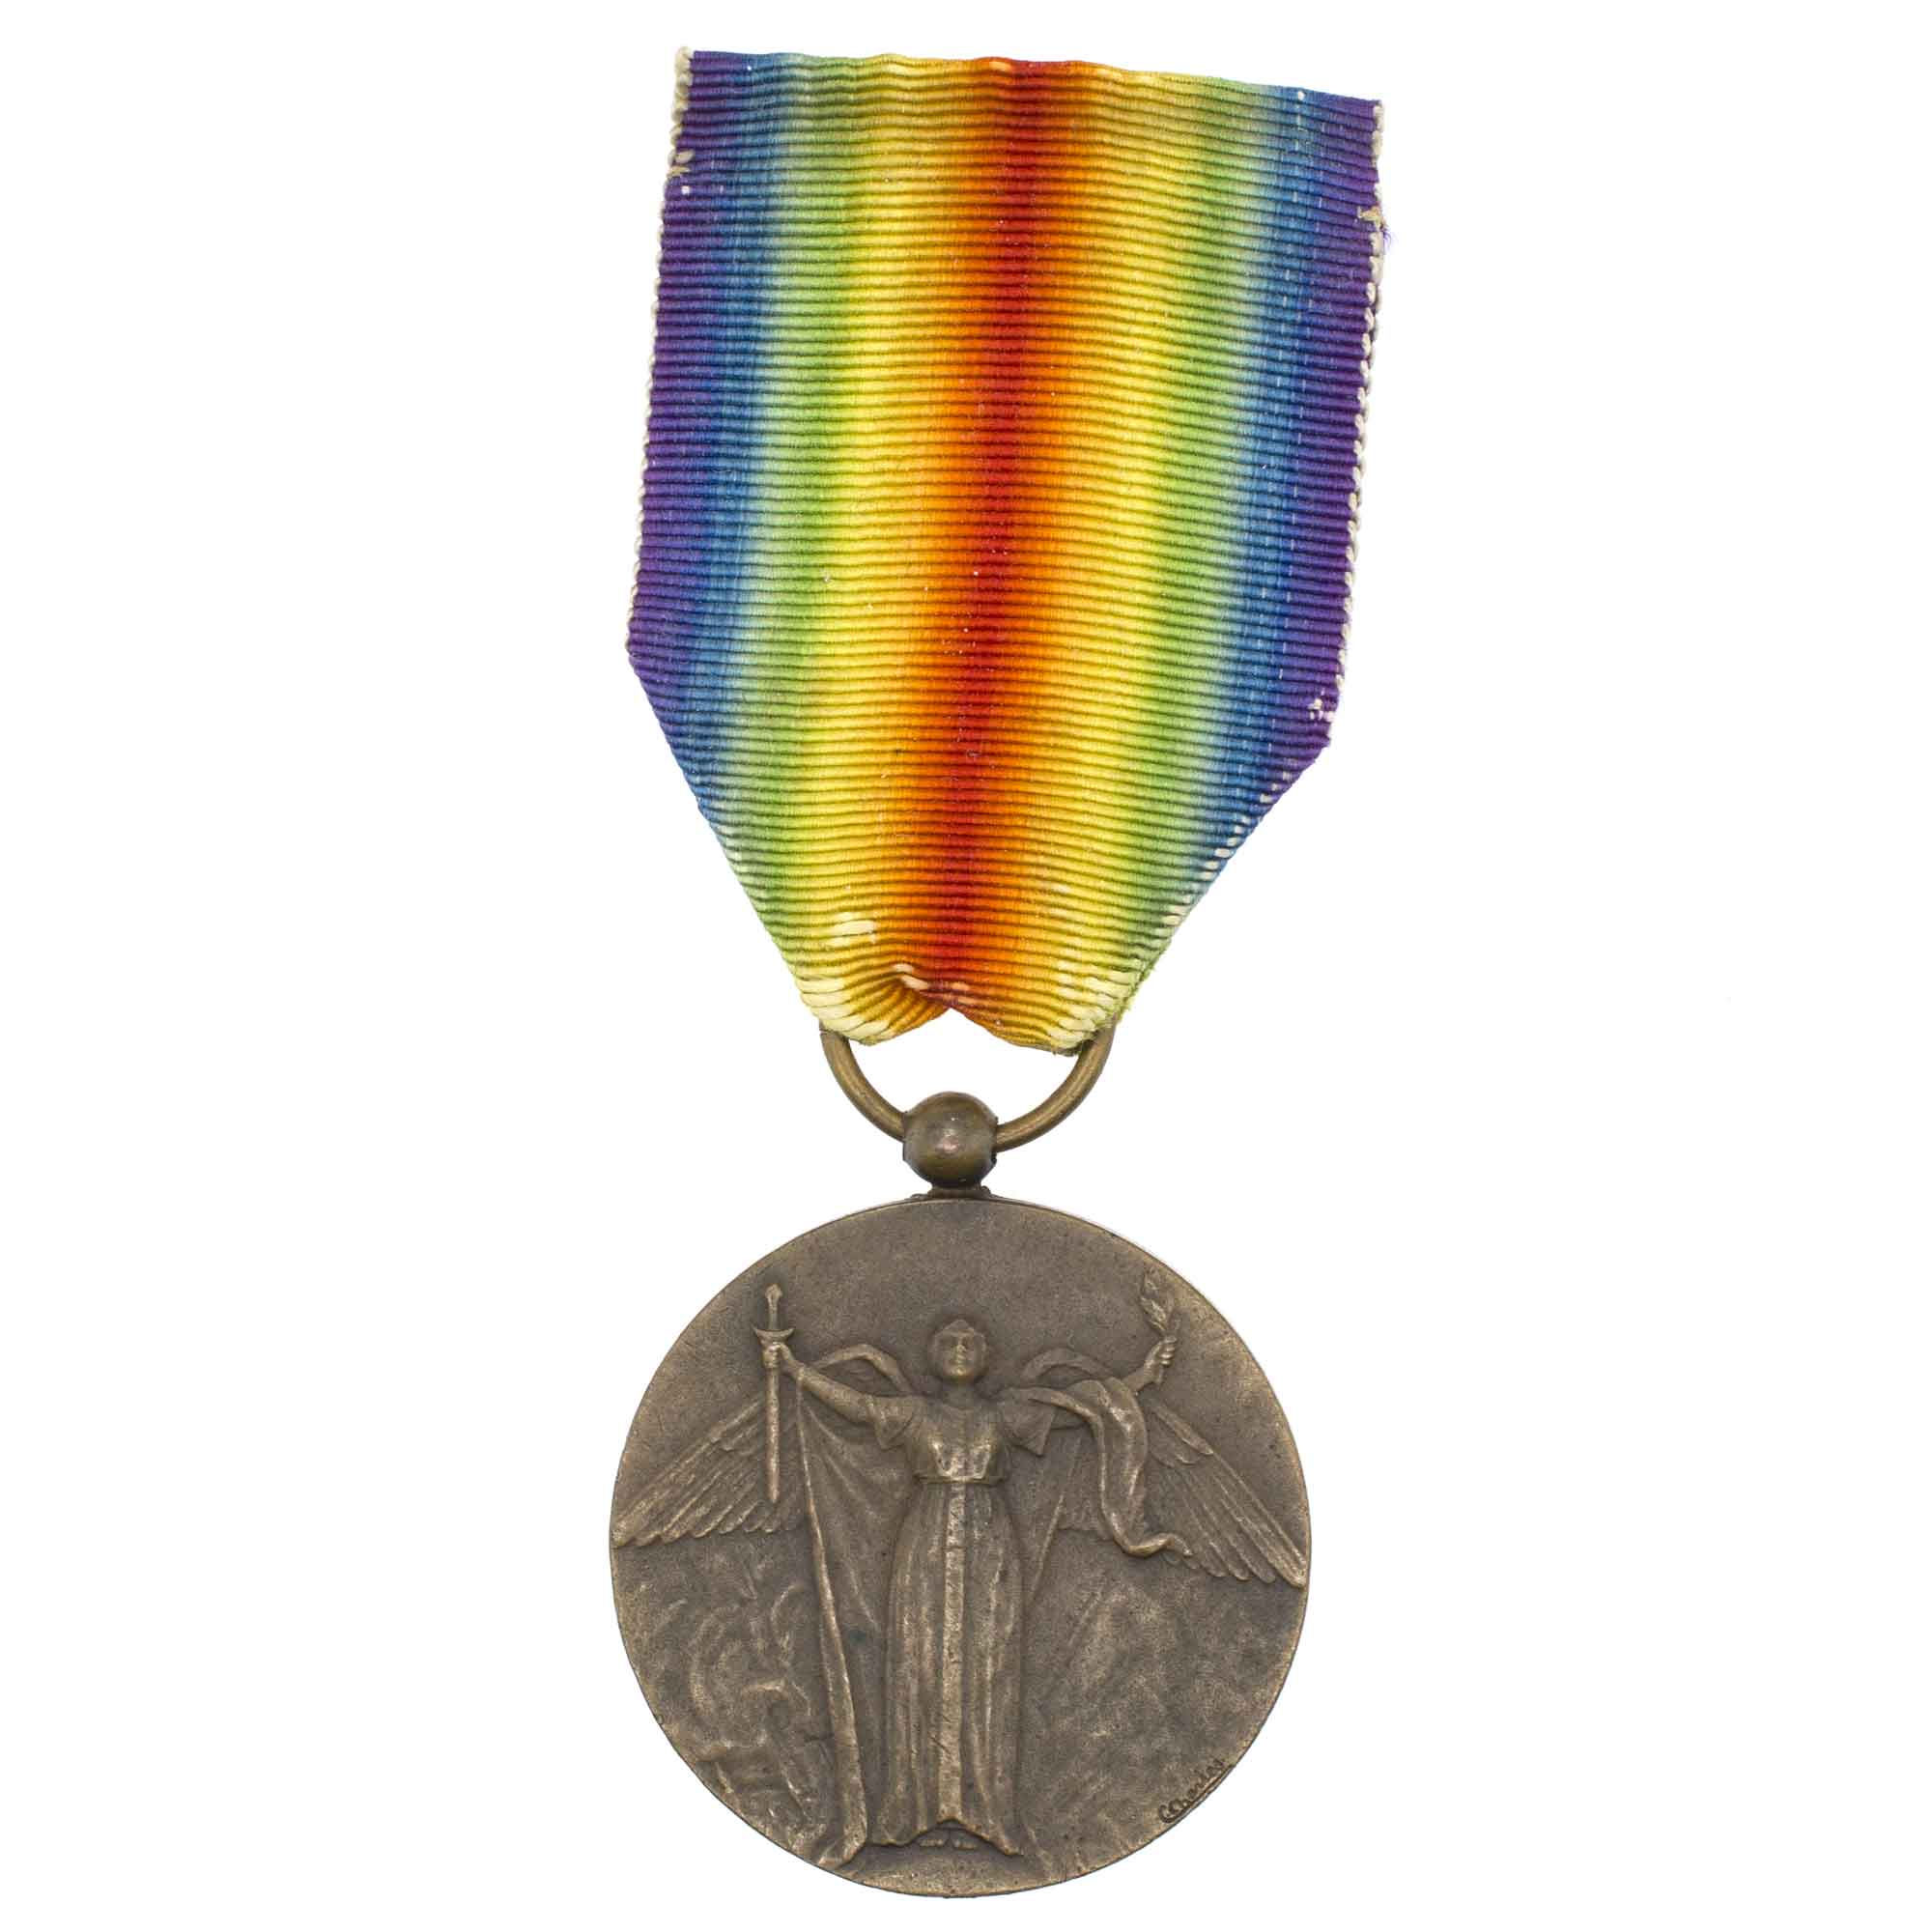 Франция. Медаль "За победу" (неофициальная модель).